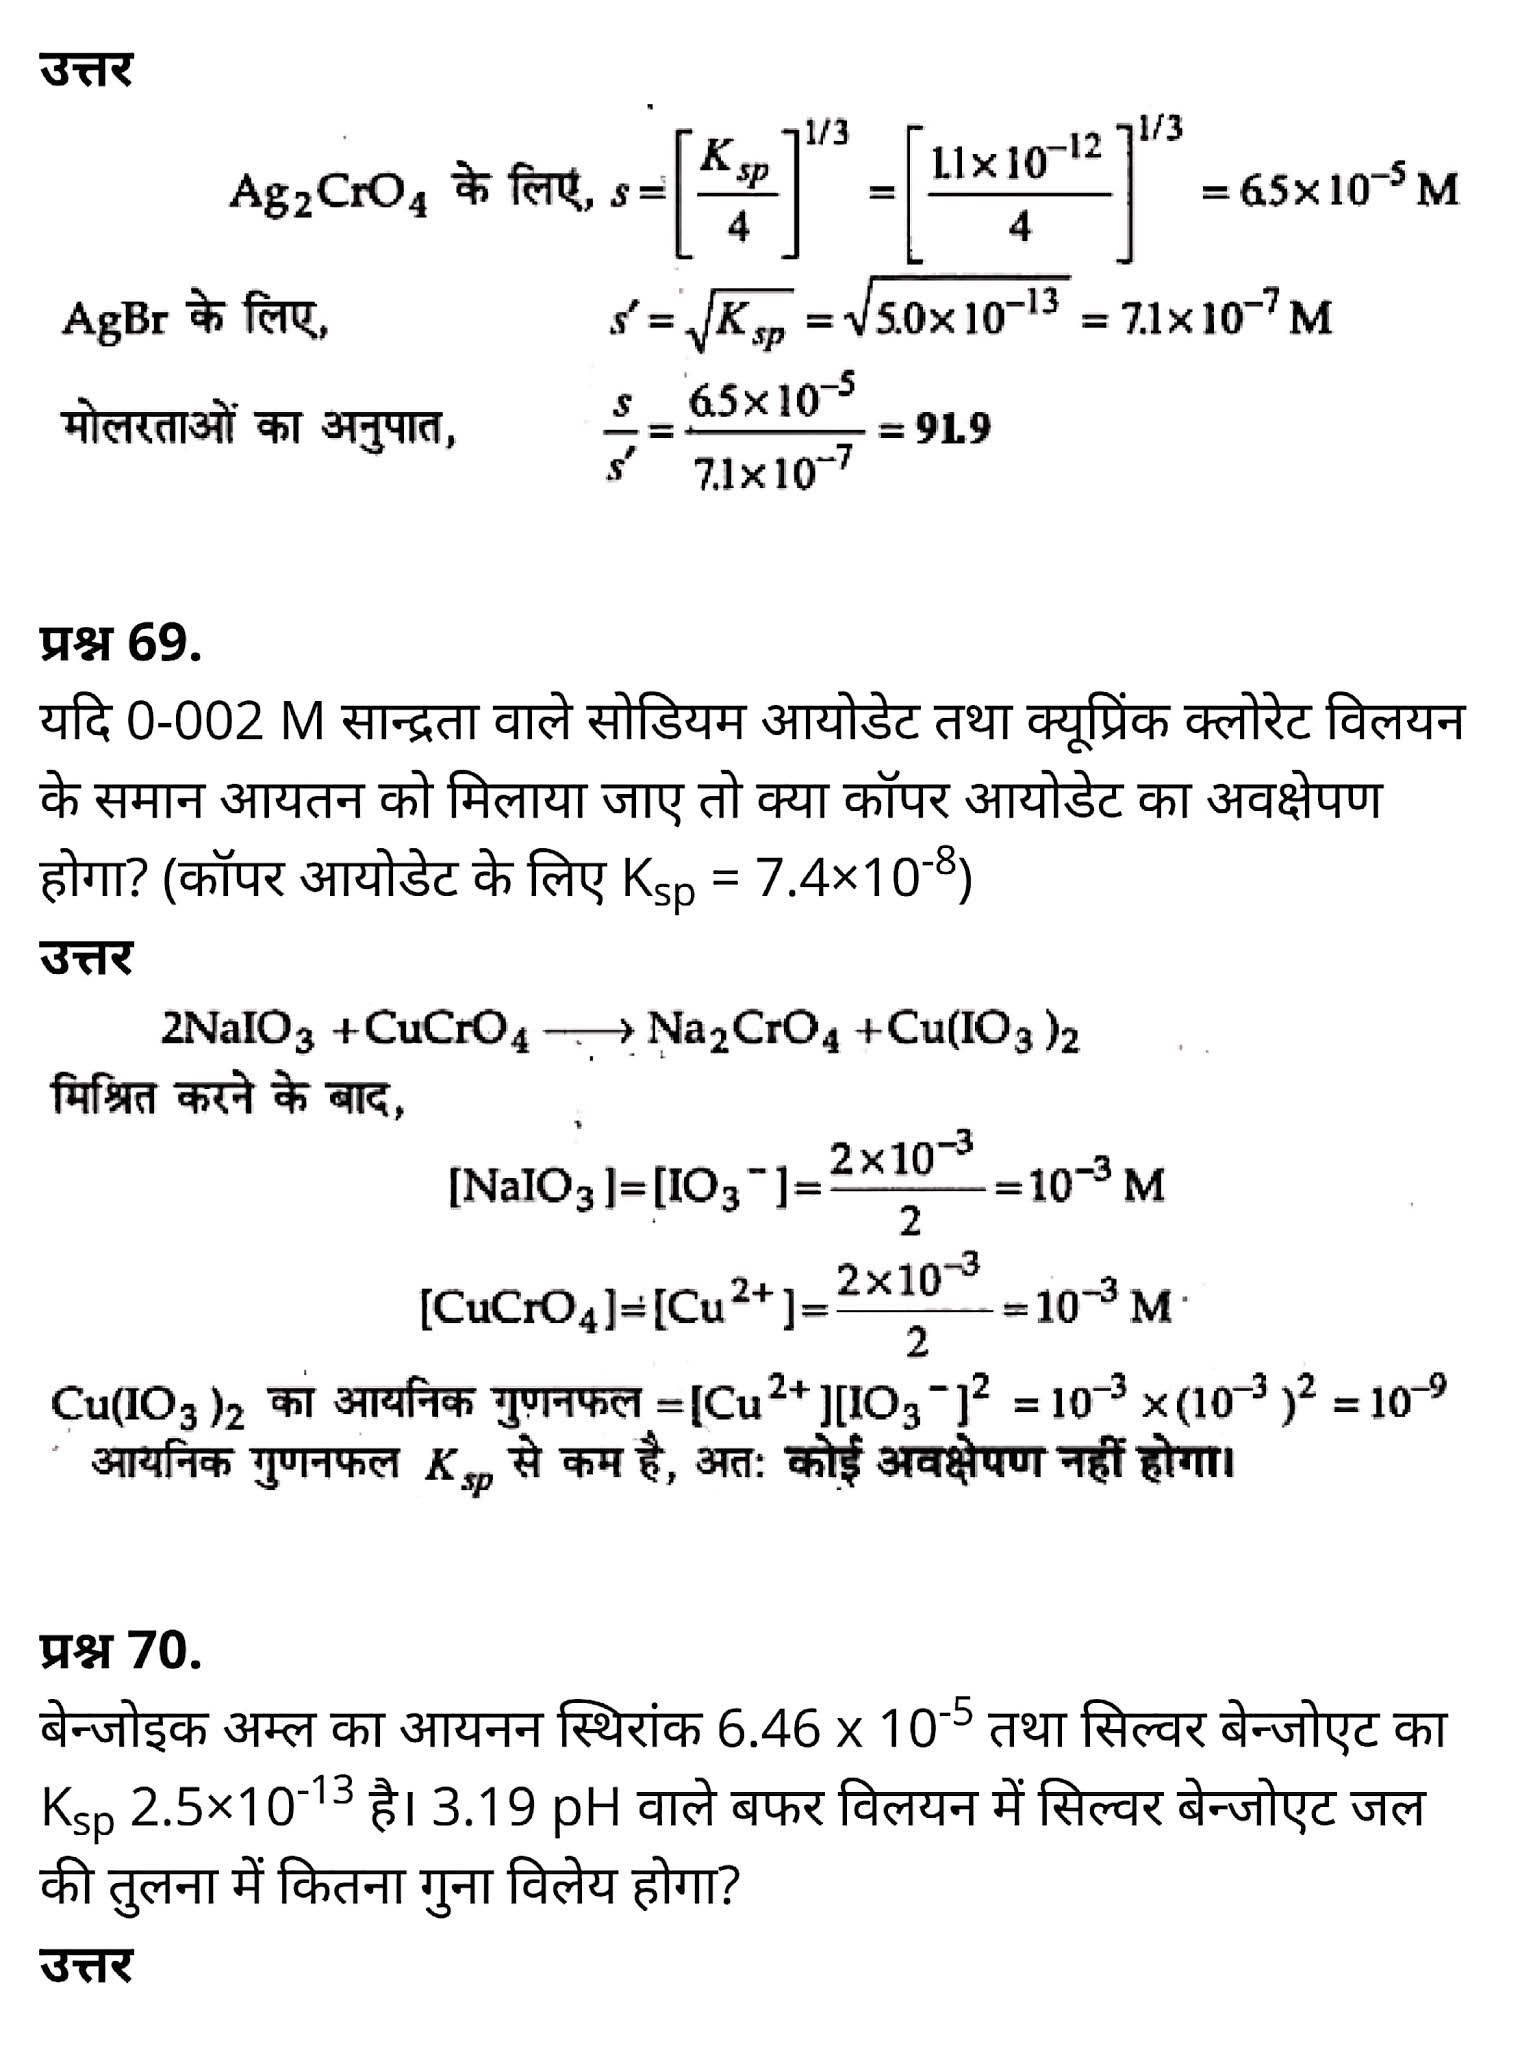 कक्षा 11 रसायन विज्ञान अध्याय 7, कक्षा 11 रसायन विज्ञान  का अध्याय 7 ncert solution in hindi, कक्षा 11 रसायन विज्ञान  के अध्याय 7 के नोट्स हिंदी में, कक्षा 11 का रसायन विज्ञान अध्याय 7 का प्रश्न उत्तर, कक्षा 11 रसायन विज्ञान  अध्याय 7 के नोट्स,